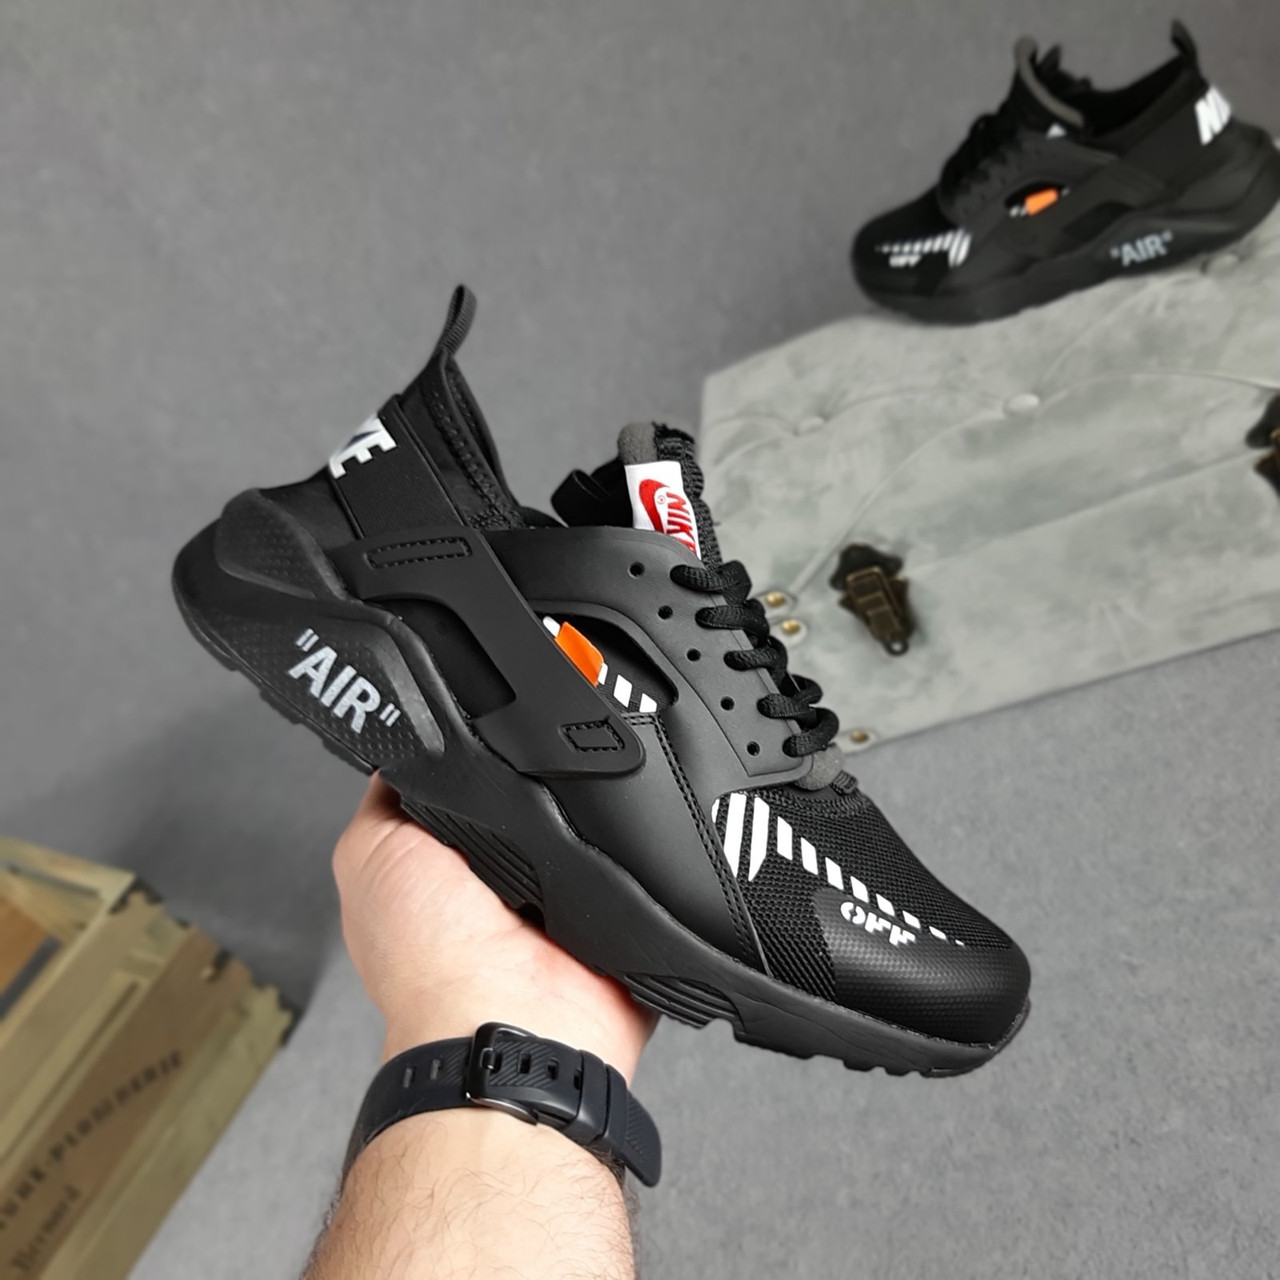 

Кроссовки мужские Nike Huarache OFF White черные, Найк Хуарачи, дышащий материал, прошиты. Код OD-10405 45, Черный